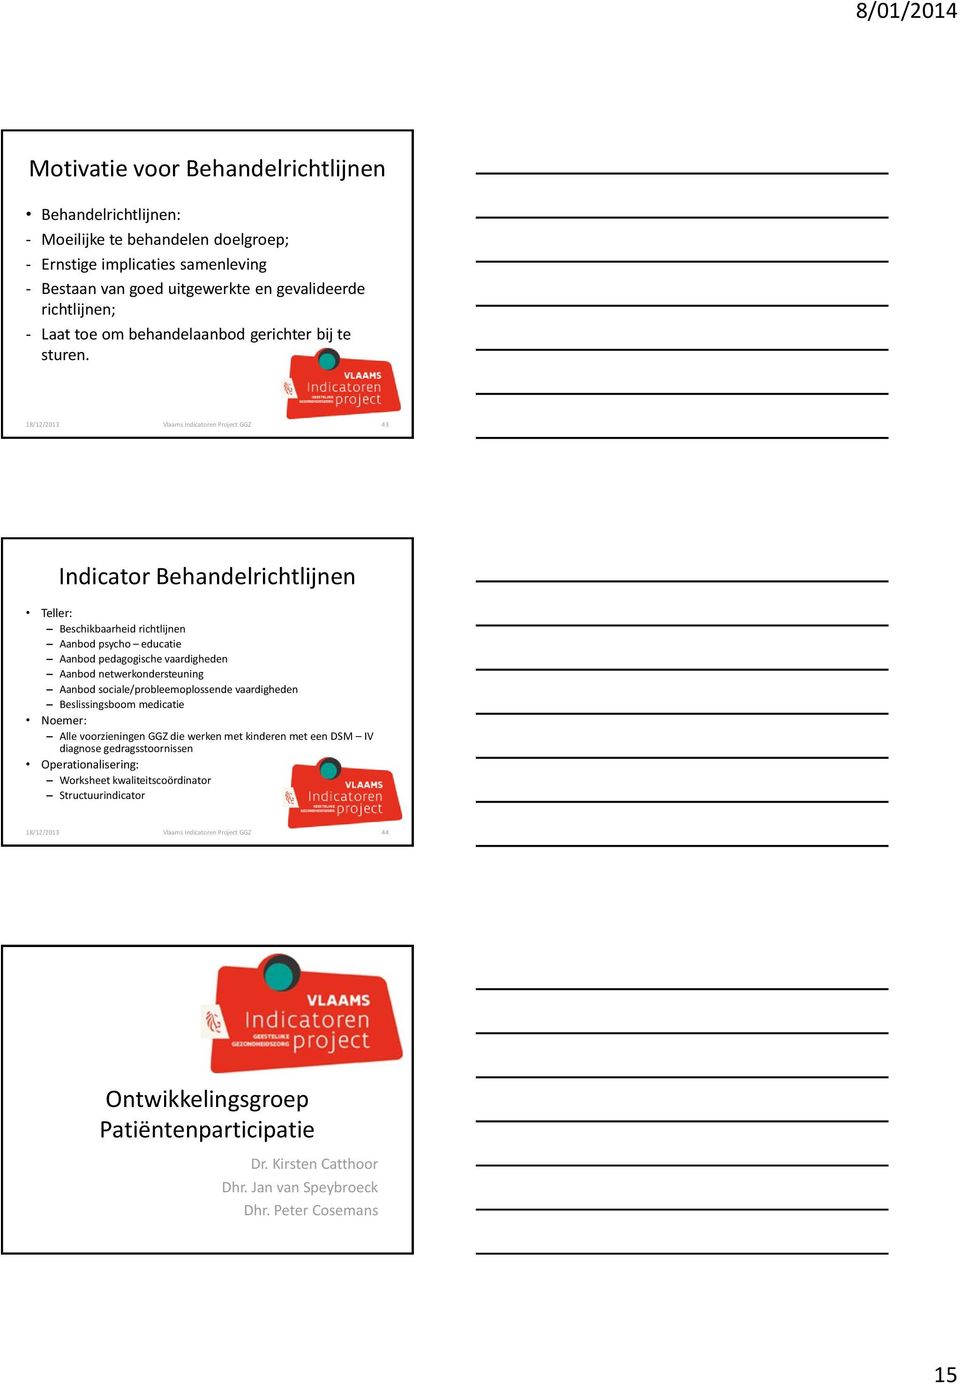 18/12/2013 Vlaams Indicatoren Project GGZ 43 Indicator Behandelrichtlijnen Beschikbaarheid richtlijnen Aanbod psycho educatie Aanbod pedagogische vaardigheden Aanbod netwerkondersteuning Aanbod